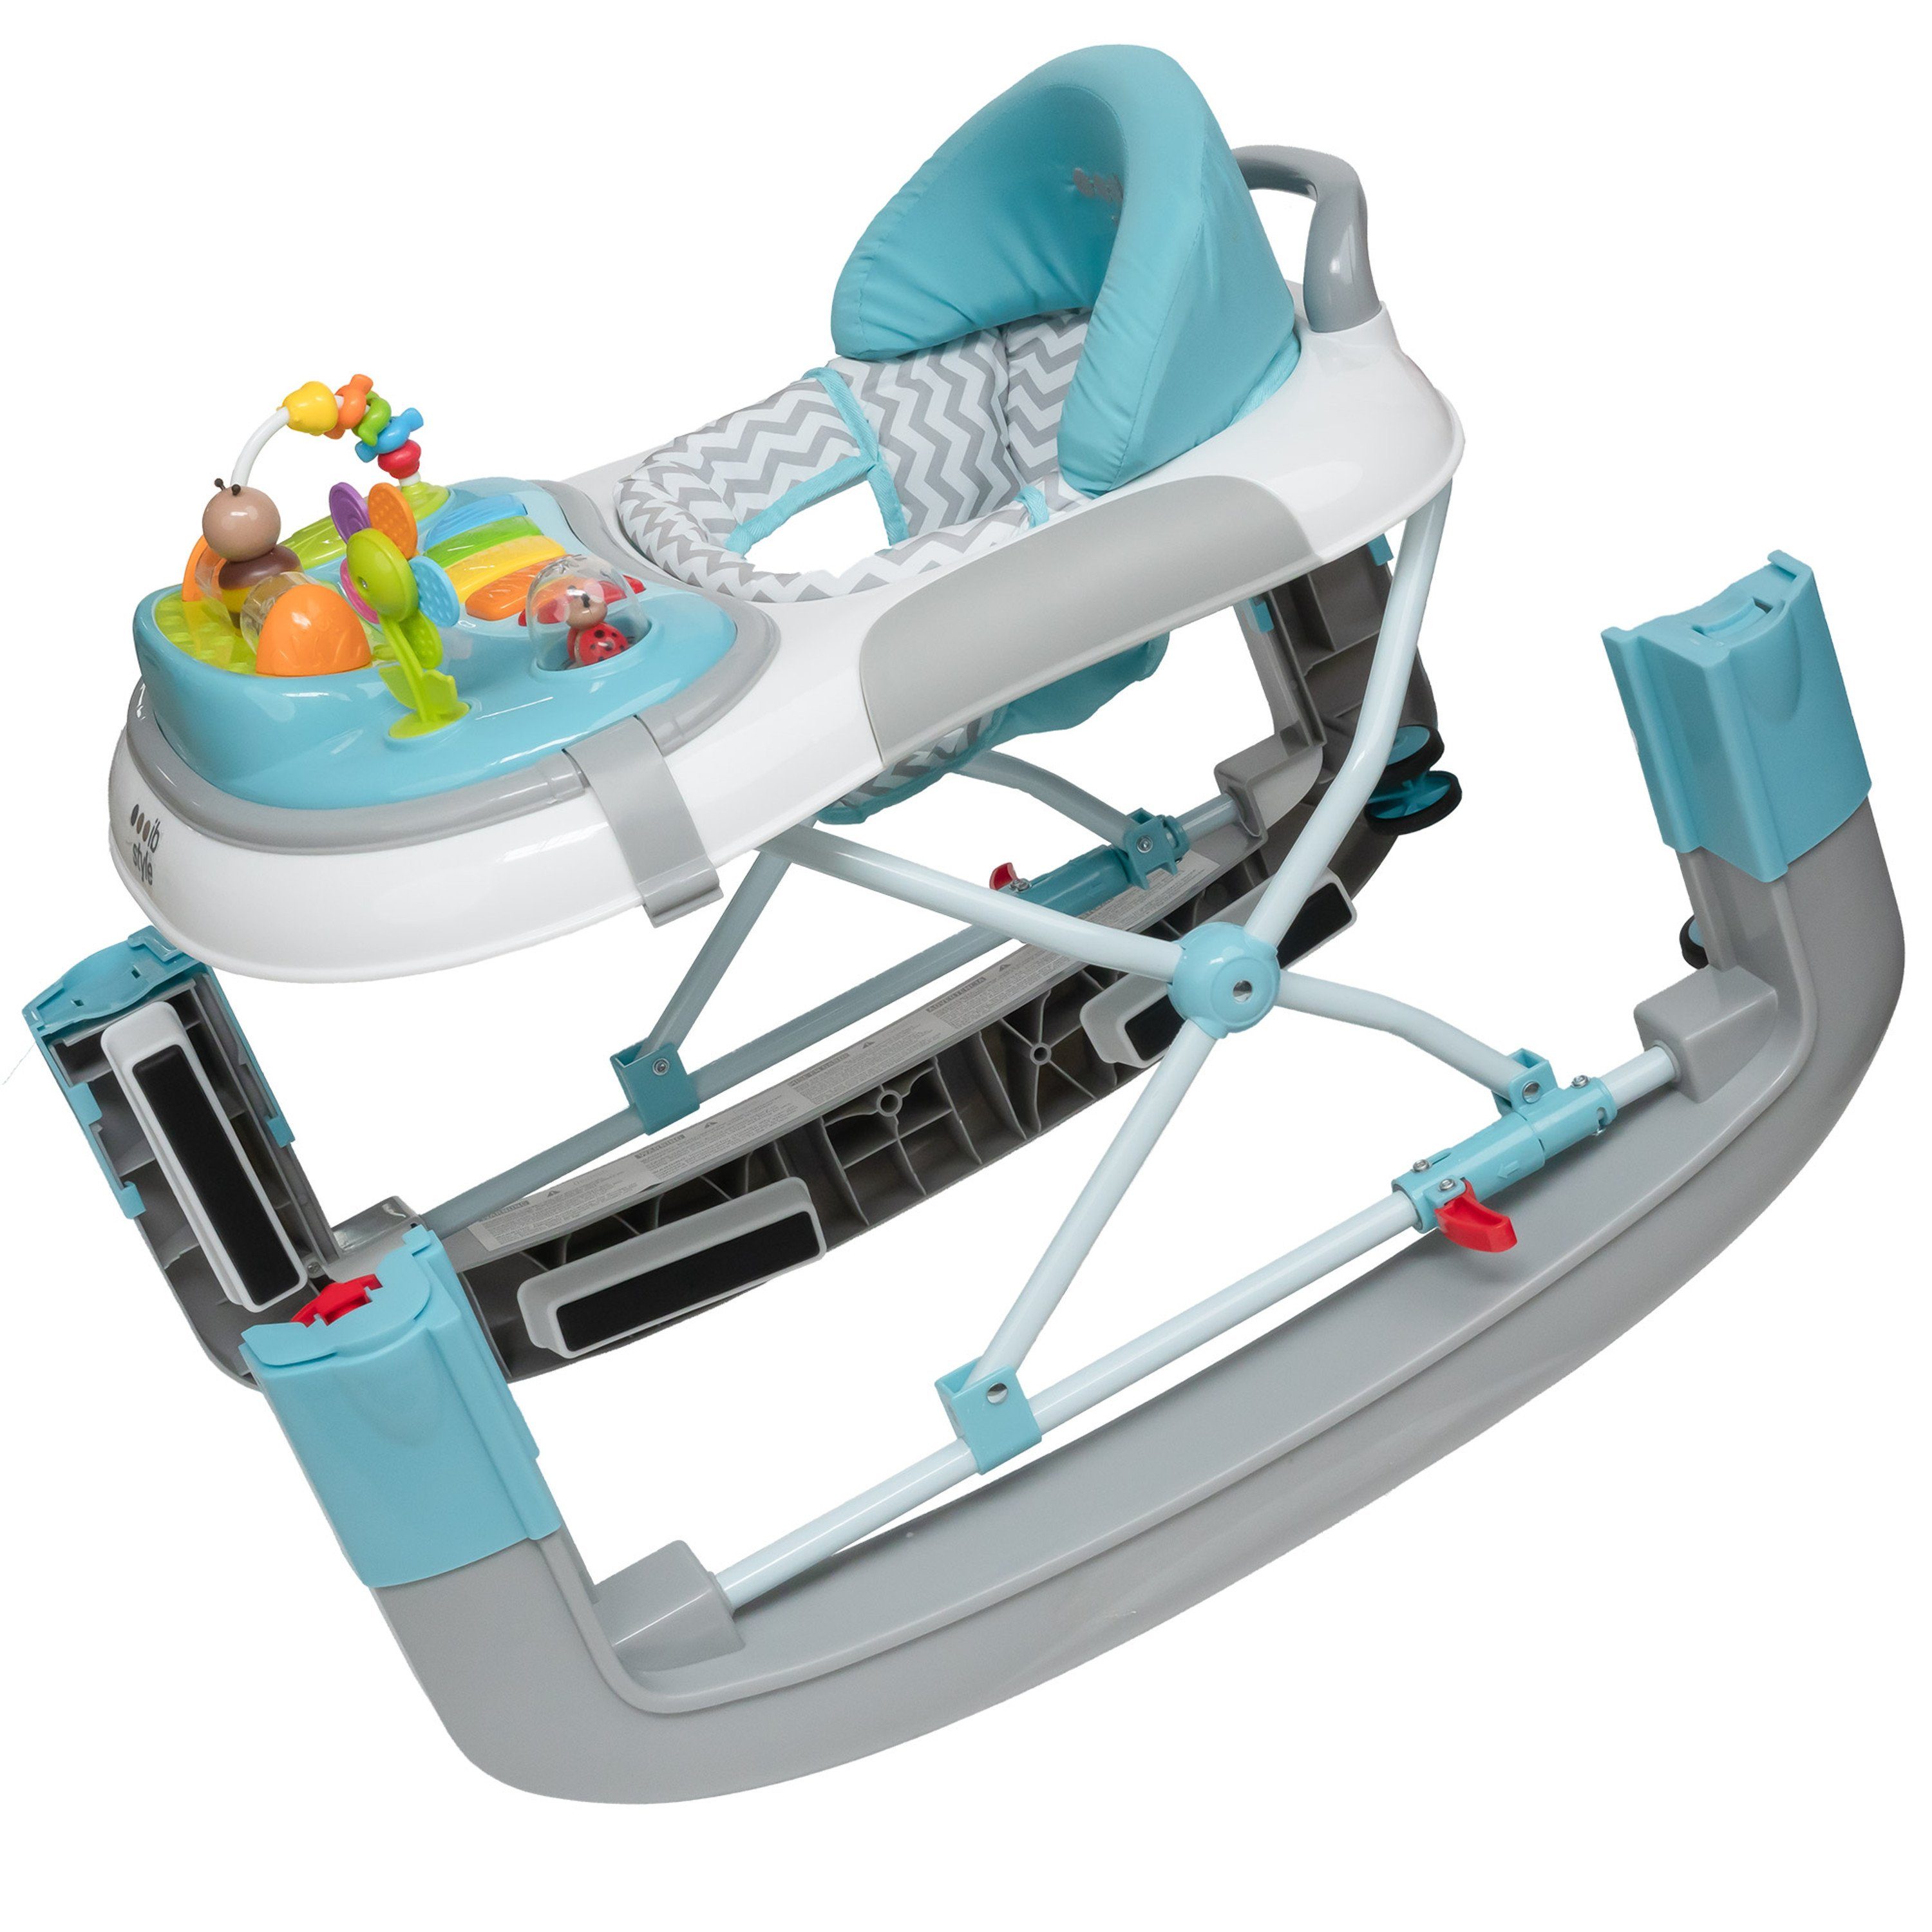 Wave Spielelement Mint, ib & Lauflernhilfe mit elektronischem Schaukelfunktion Babywalker style Lauflernwagen